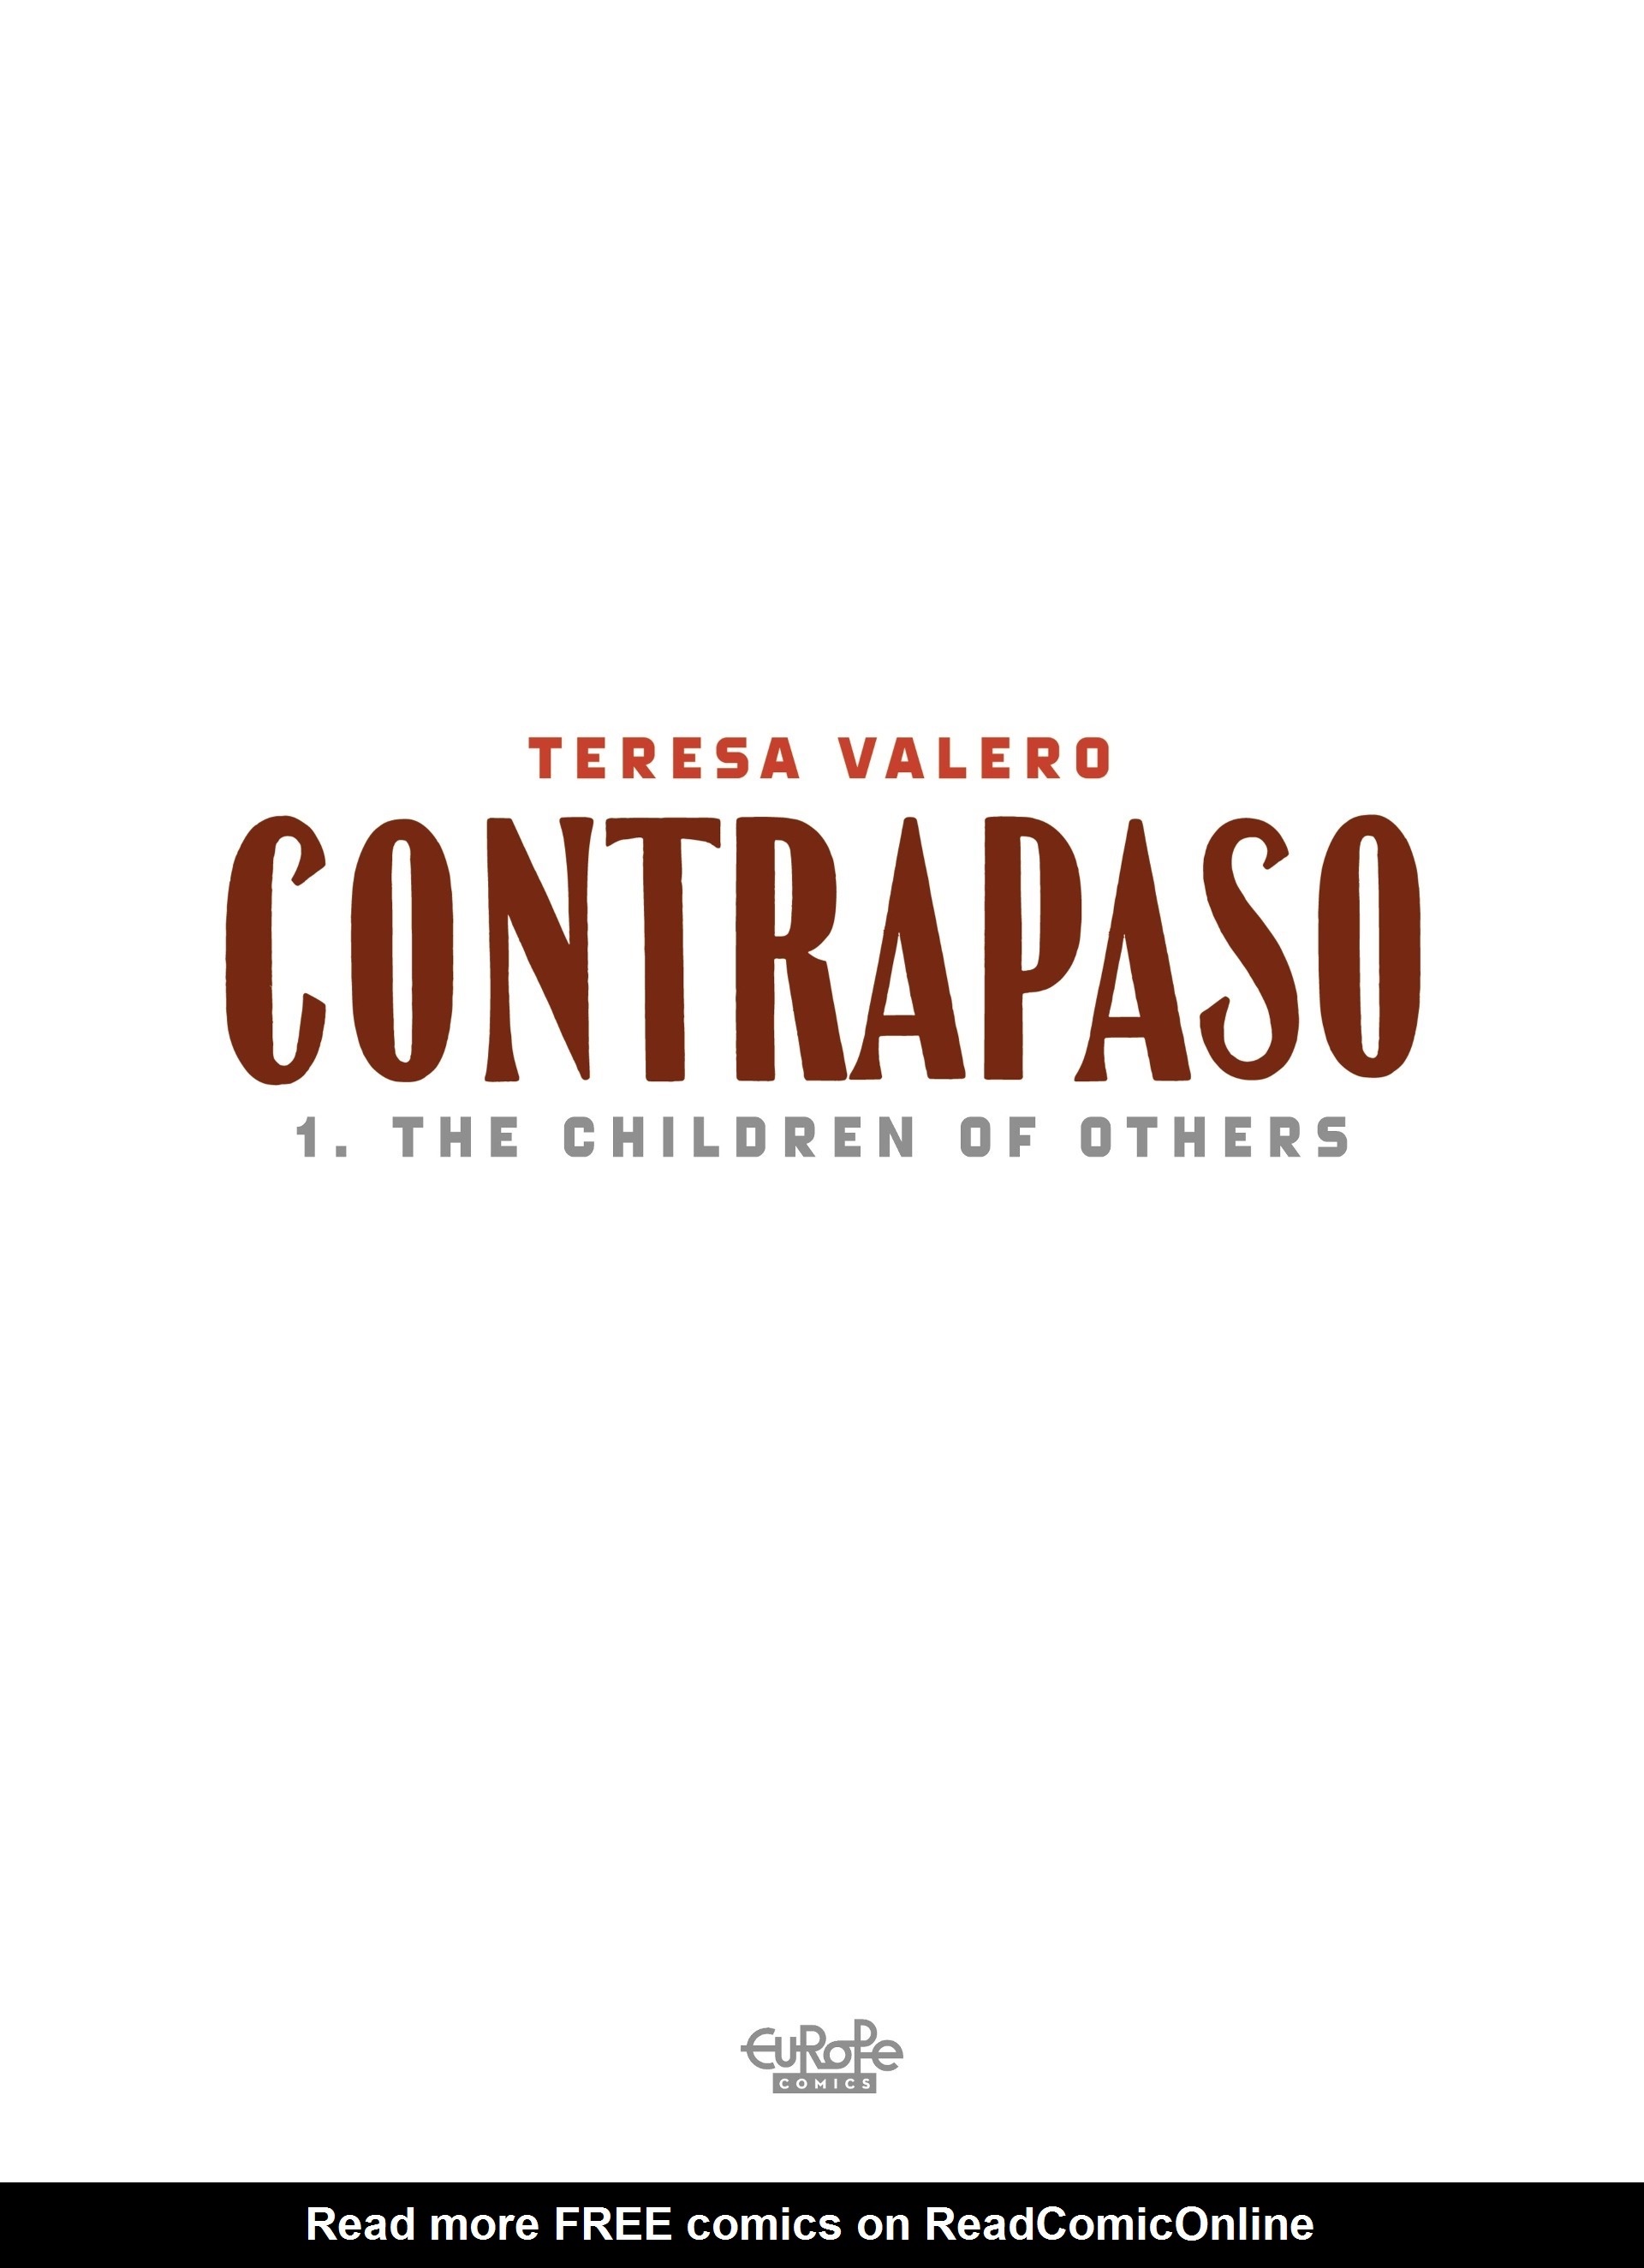 Read online Contrapaso comic -  Issue # TPB 1 - 3